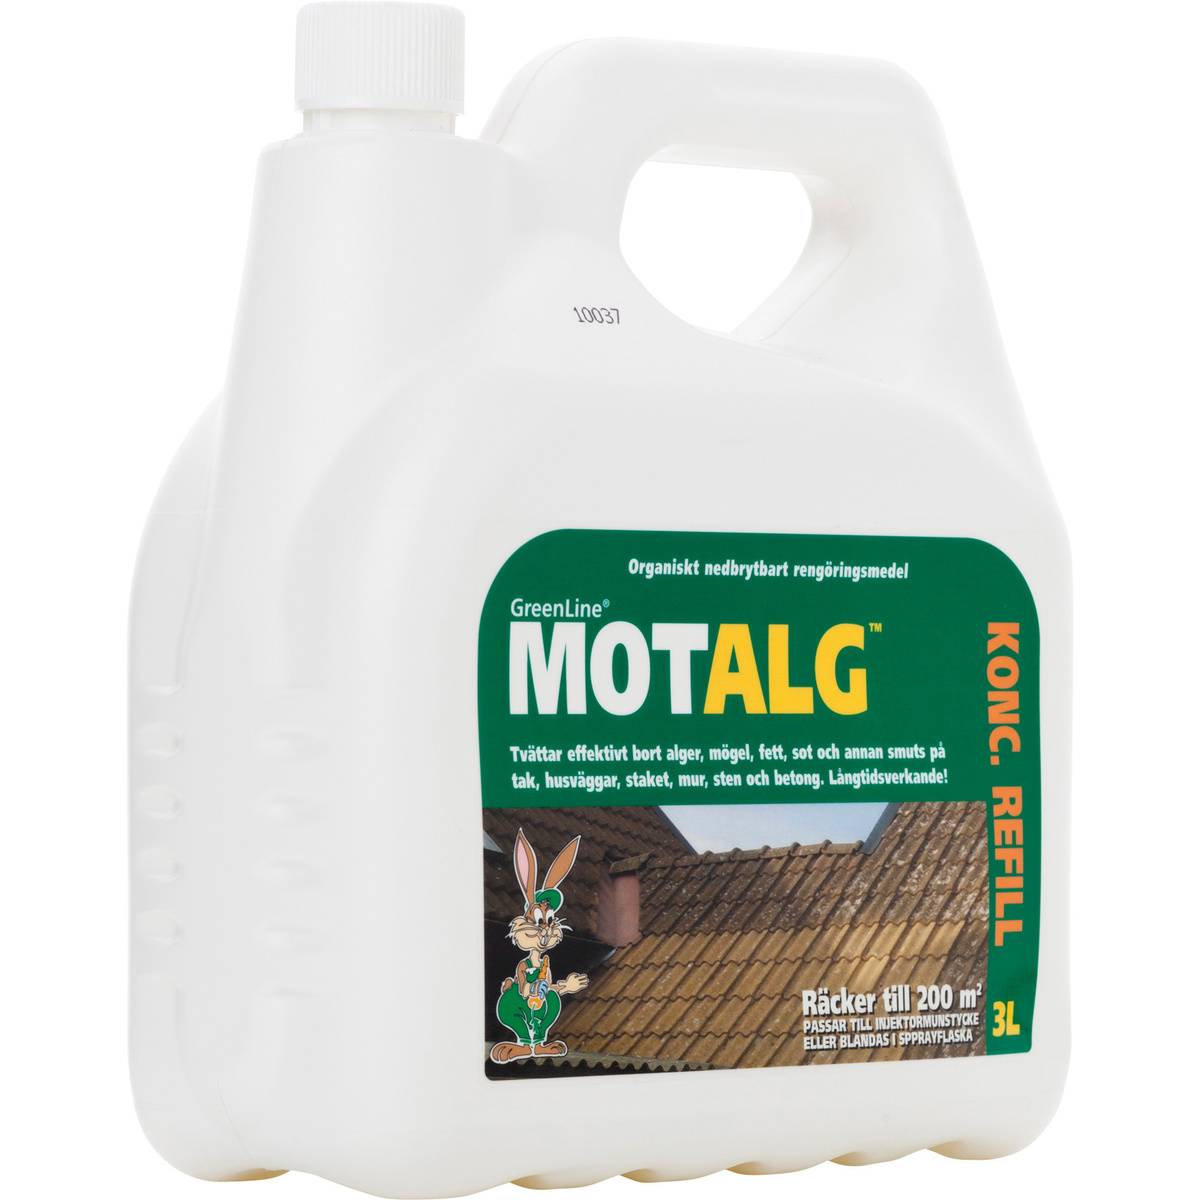 MotAlg refill 3 liter koncentrat - OUTLET